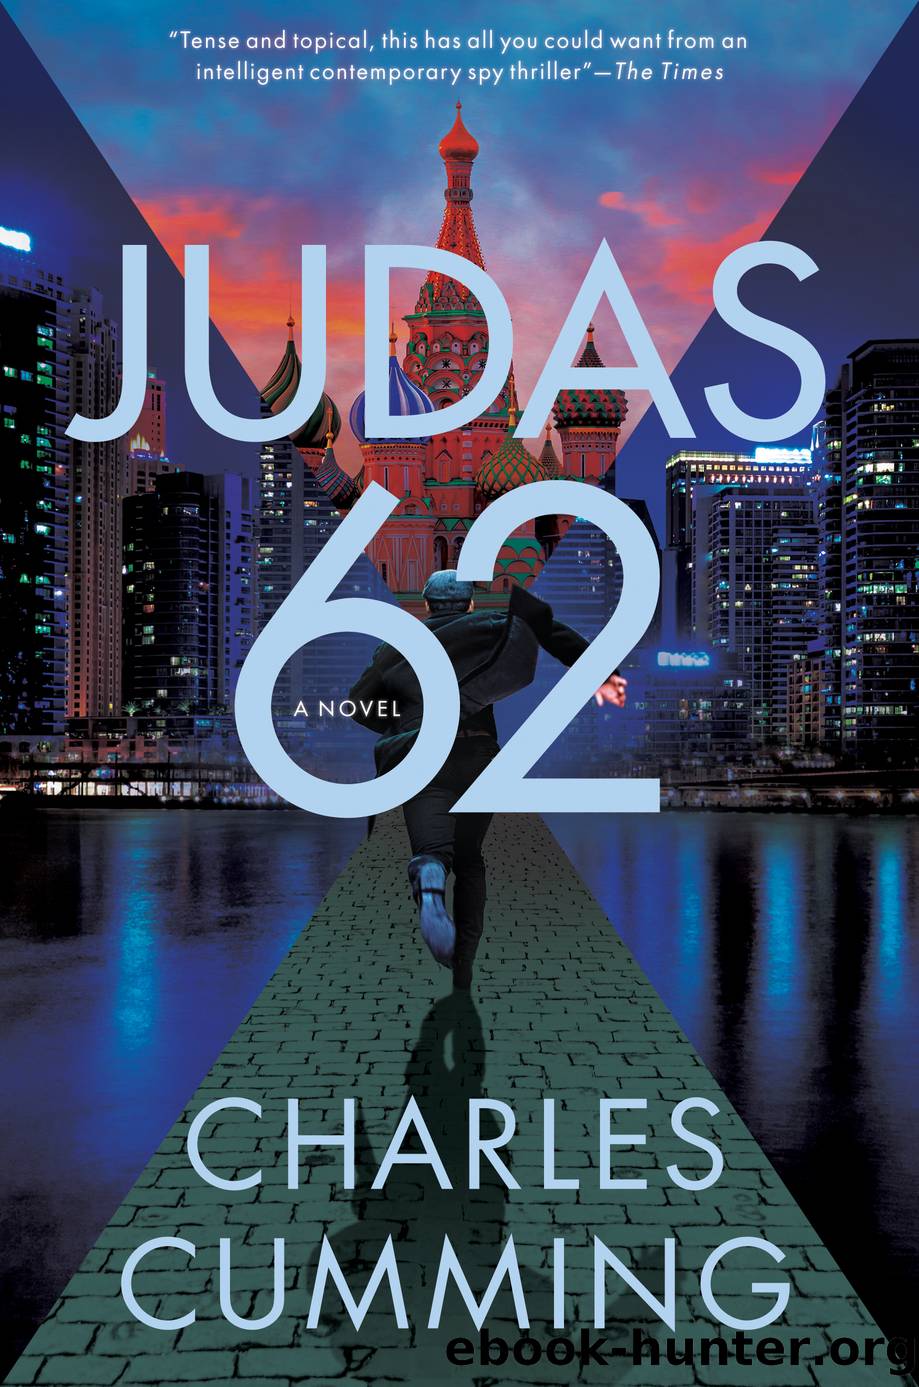 Judas 62 by Judas 62 (retail) (epub)